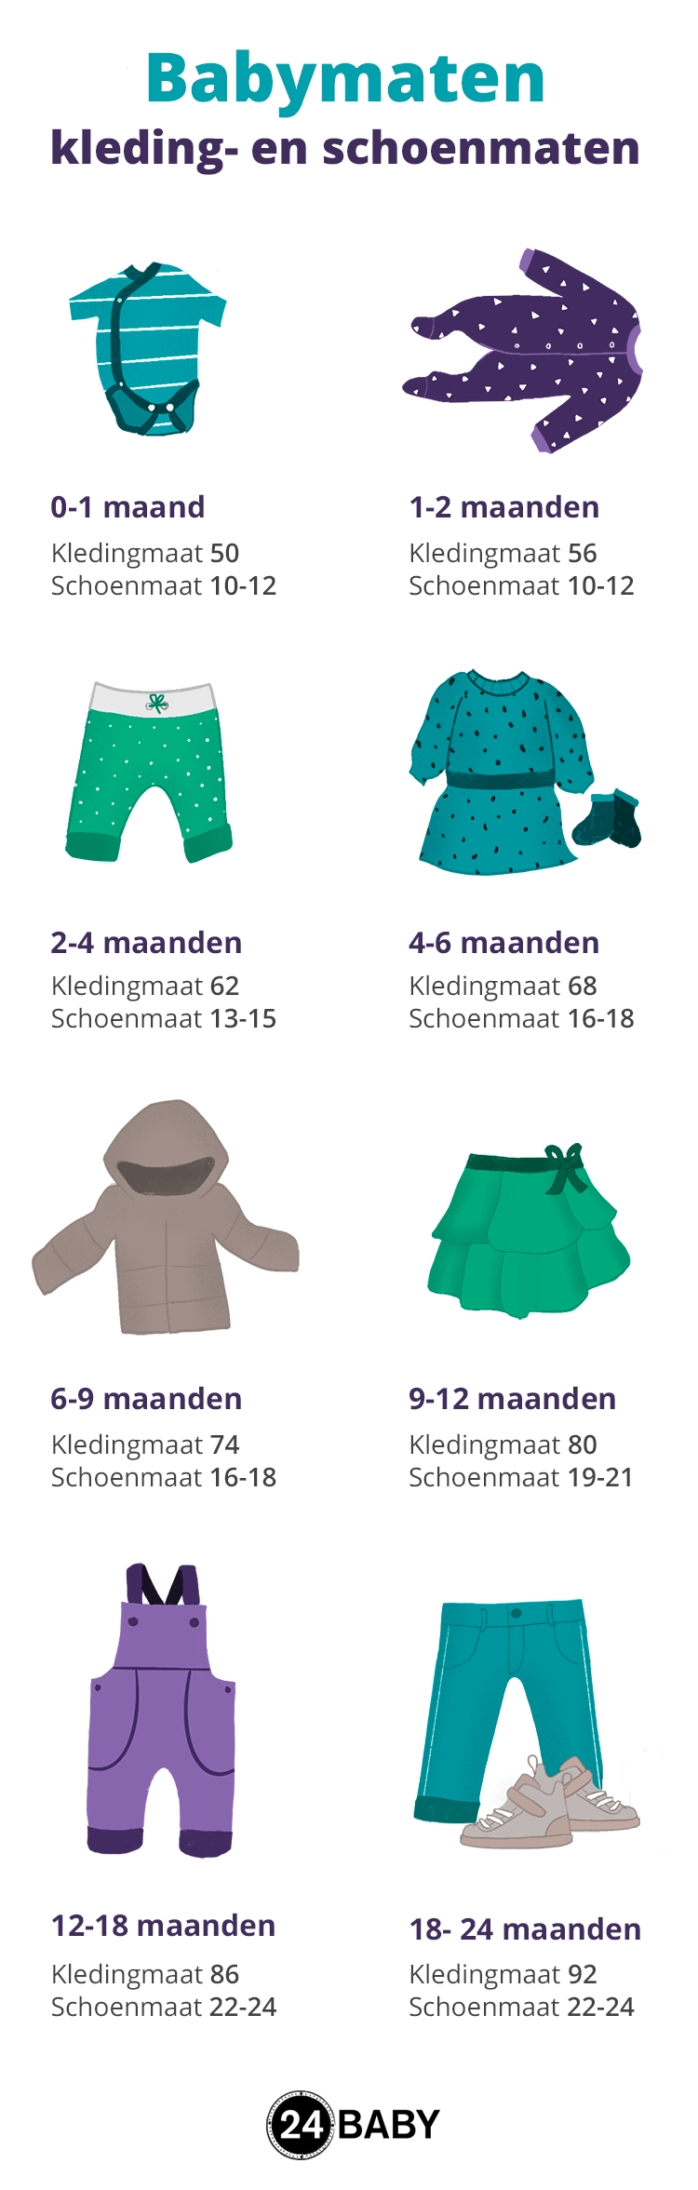 Babymaten – van tot – 24Baby.nl